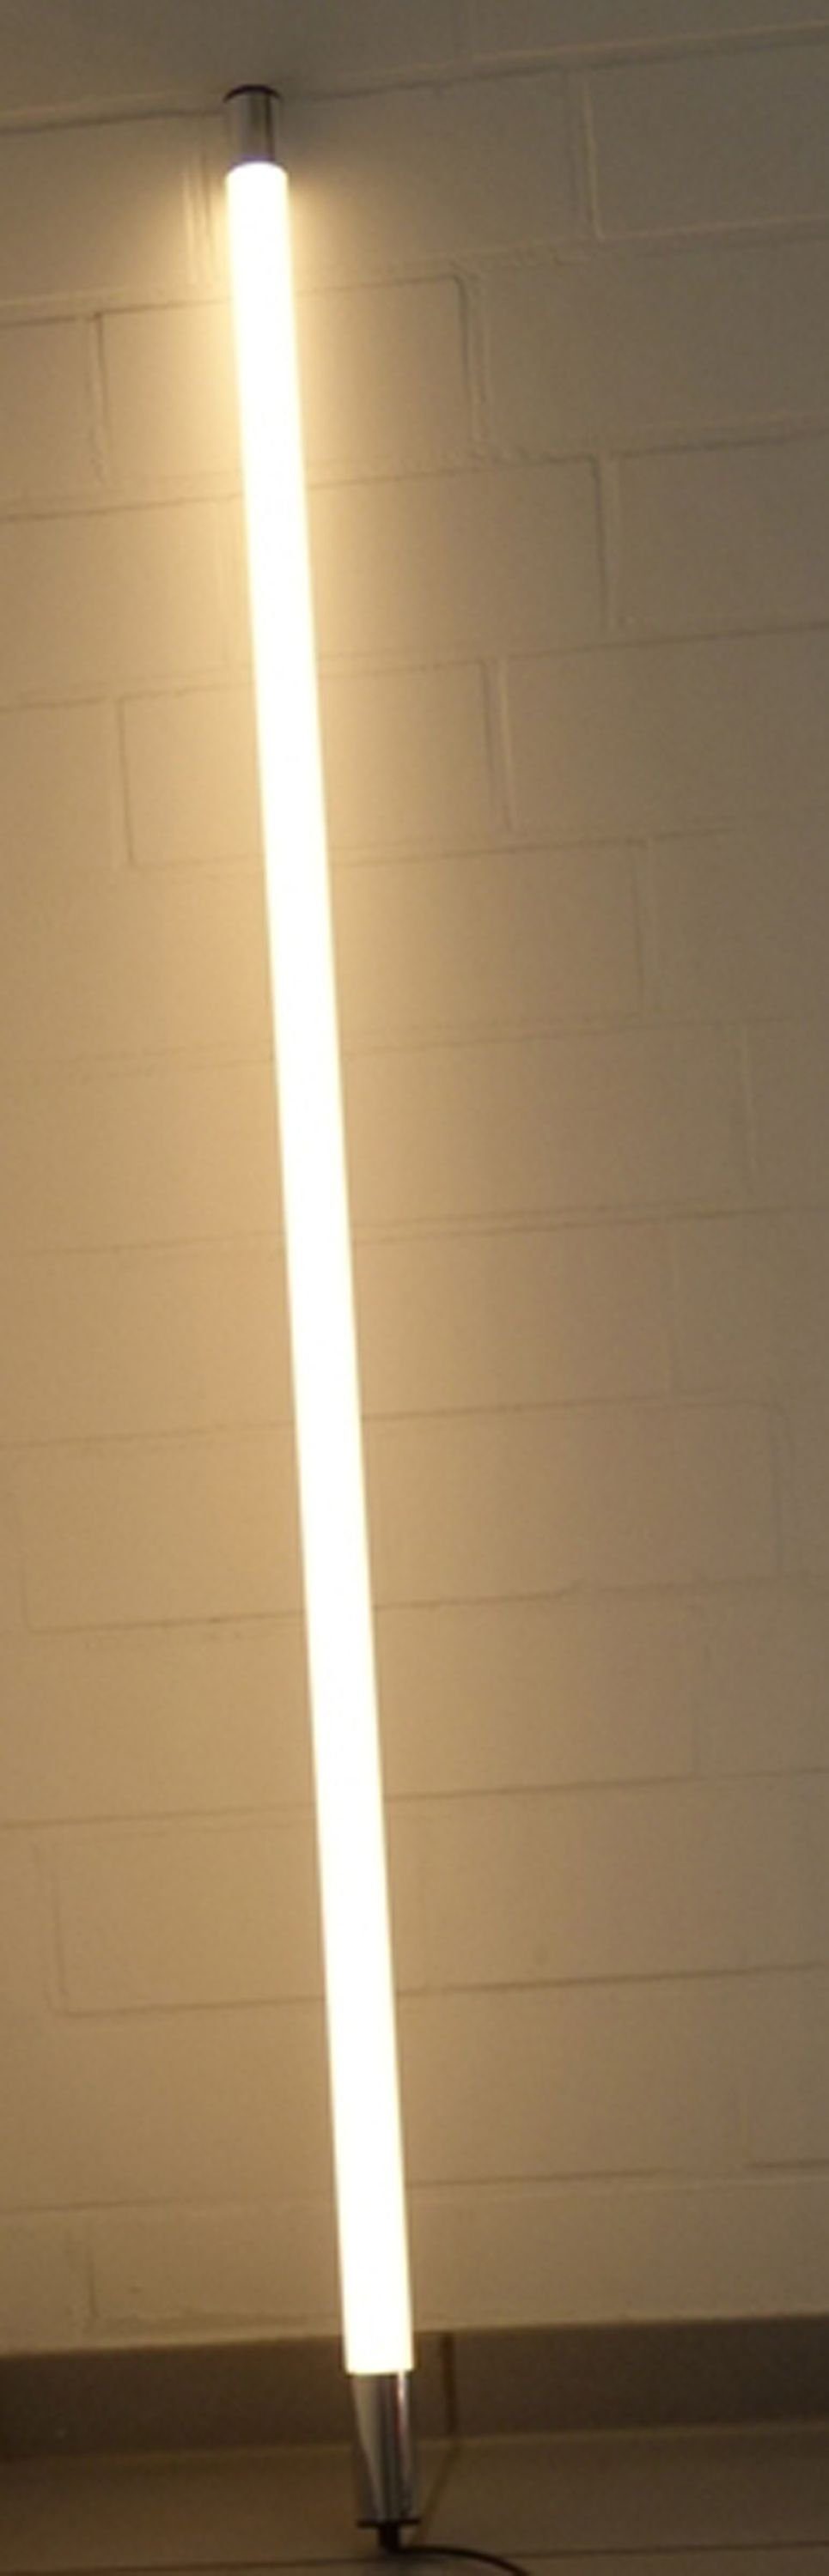 XENON WarmWeiß, Satiniert LED Röhre Xenon Länge Weiß T8, LED 800 Leuchtstab Außen Lumen Warm IP44 0,63m Wandleuchte LED